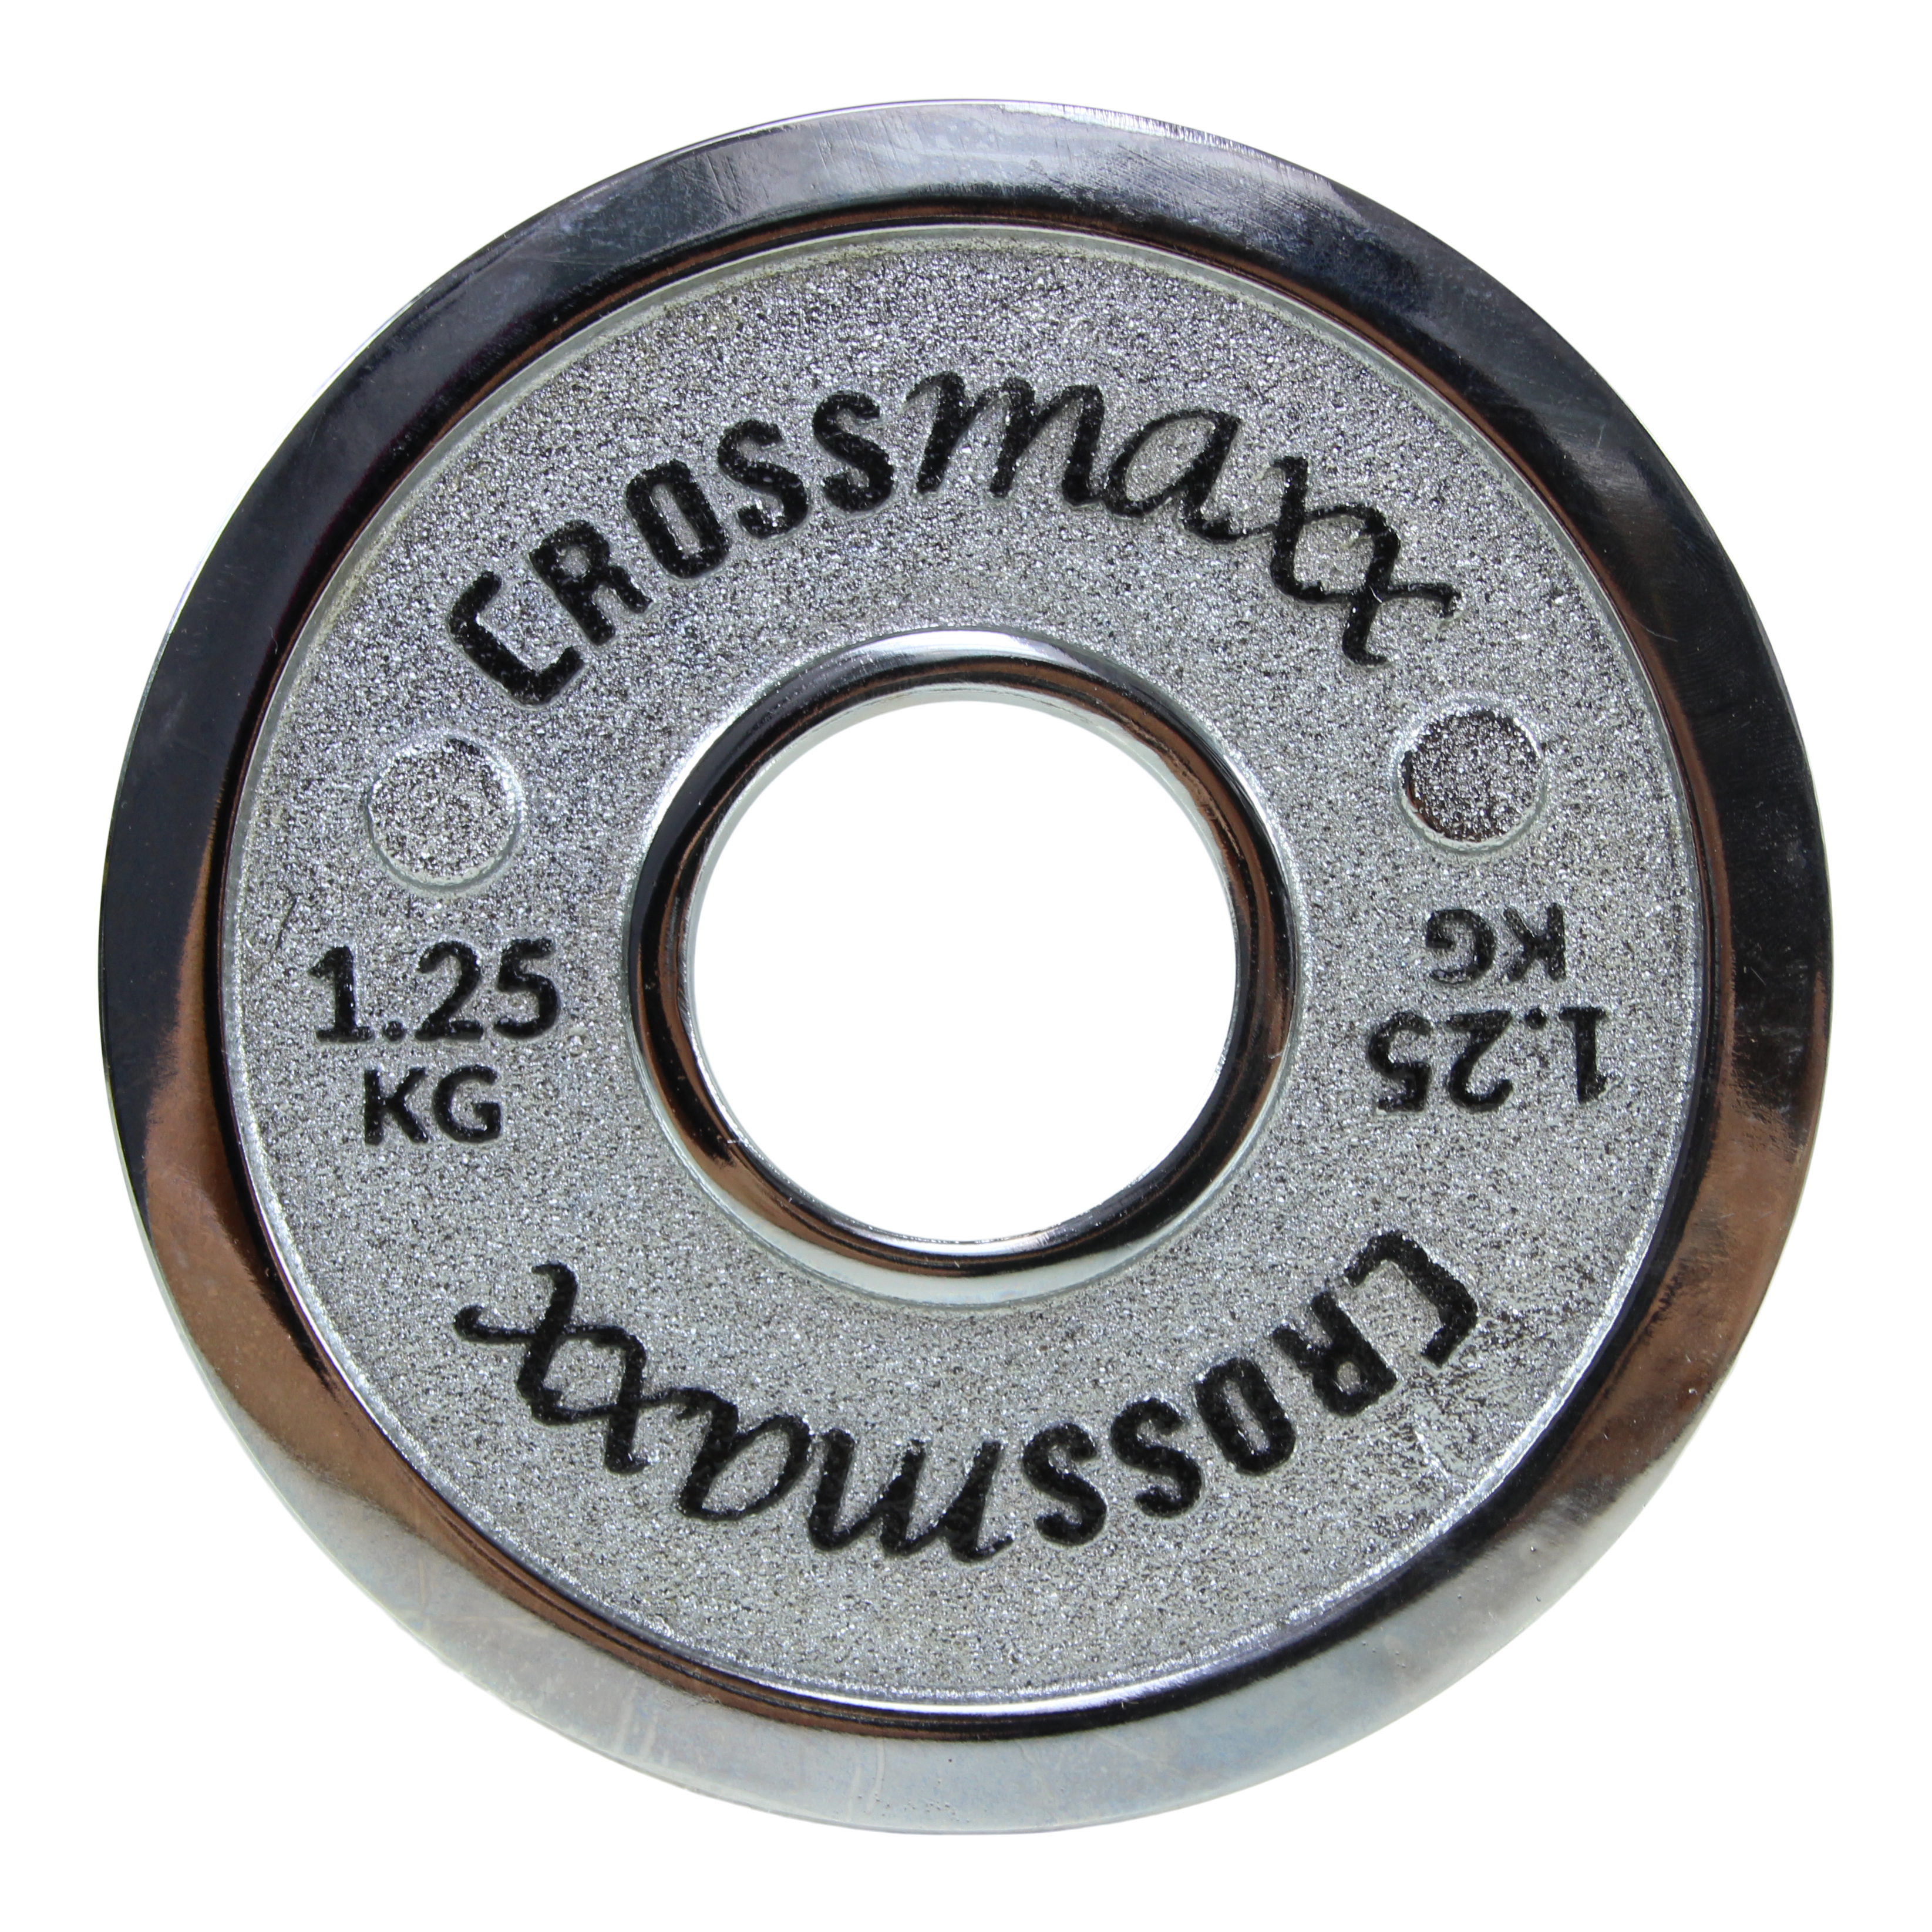 Brug Crossmaxx kalibreret vægtskive 1,25 kg i støbejern til styrkeløft til en forbedret oplevelse